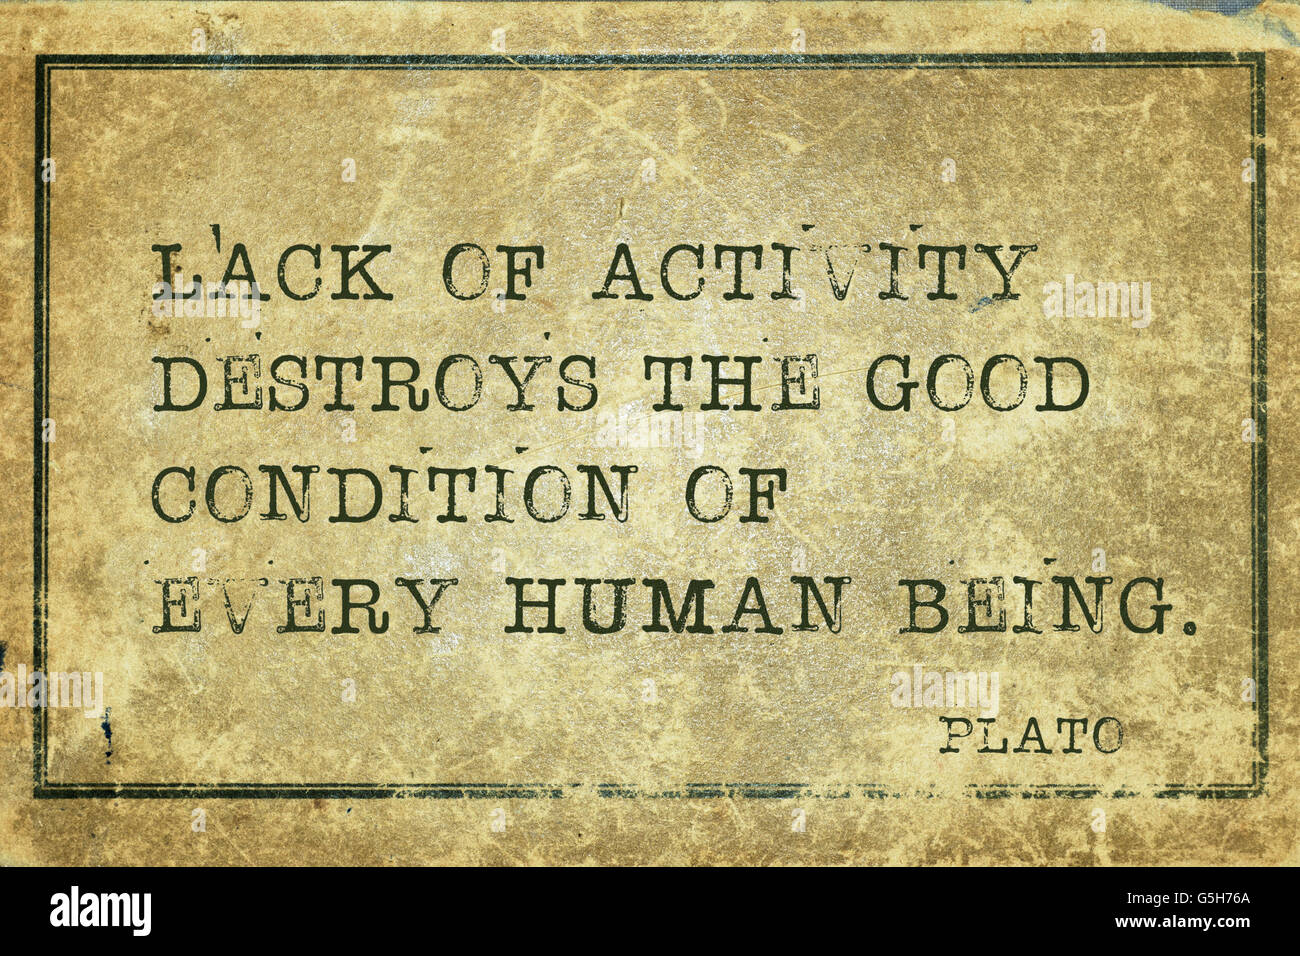 Mangel an Aktivität zerstört das gute - der griechische Philosoph Plato Zitat auf Grunge Vintage Karton gedruckt Stockfoto